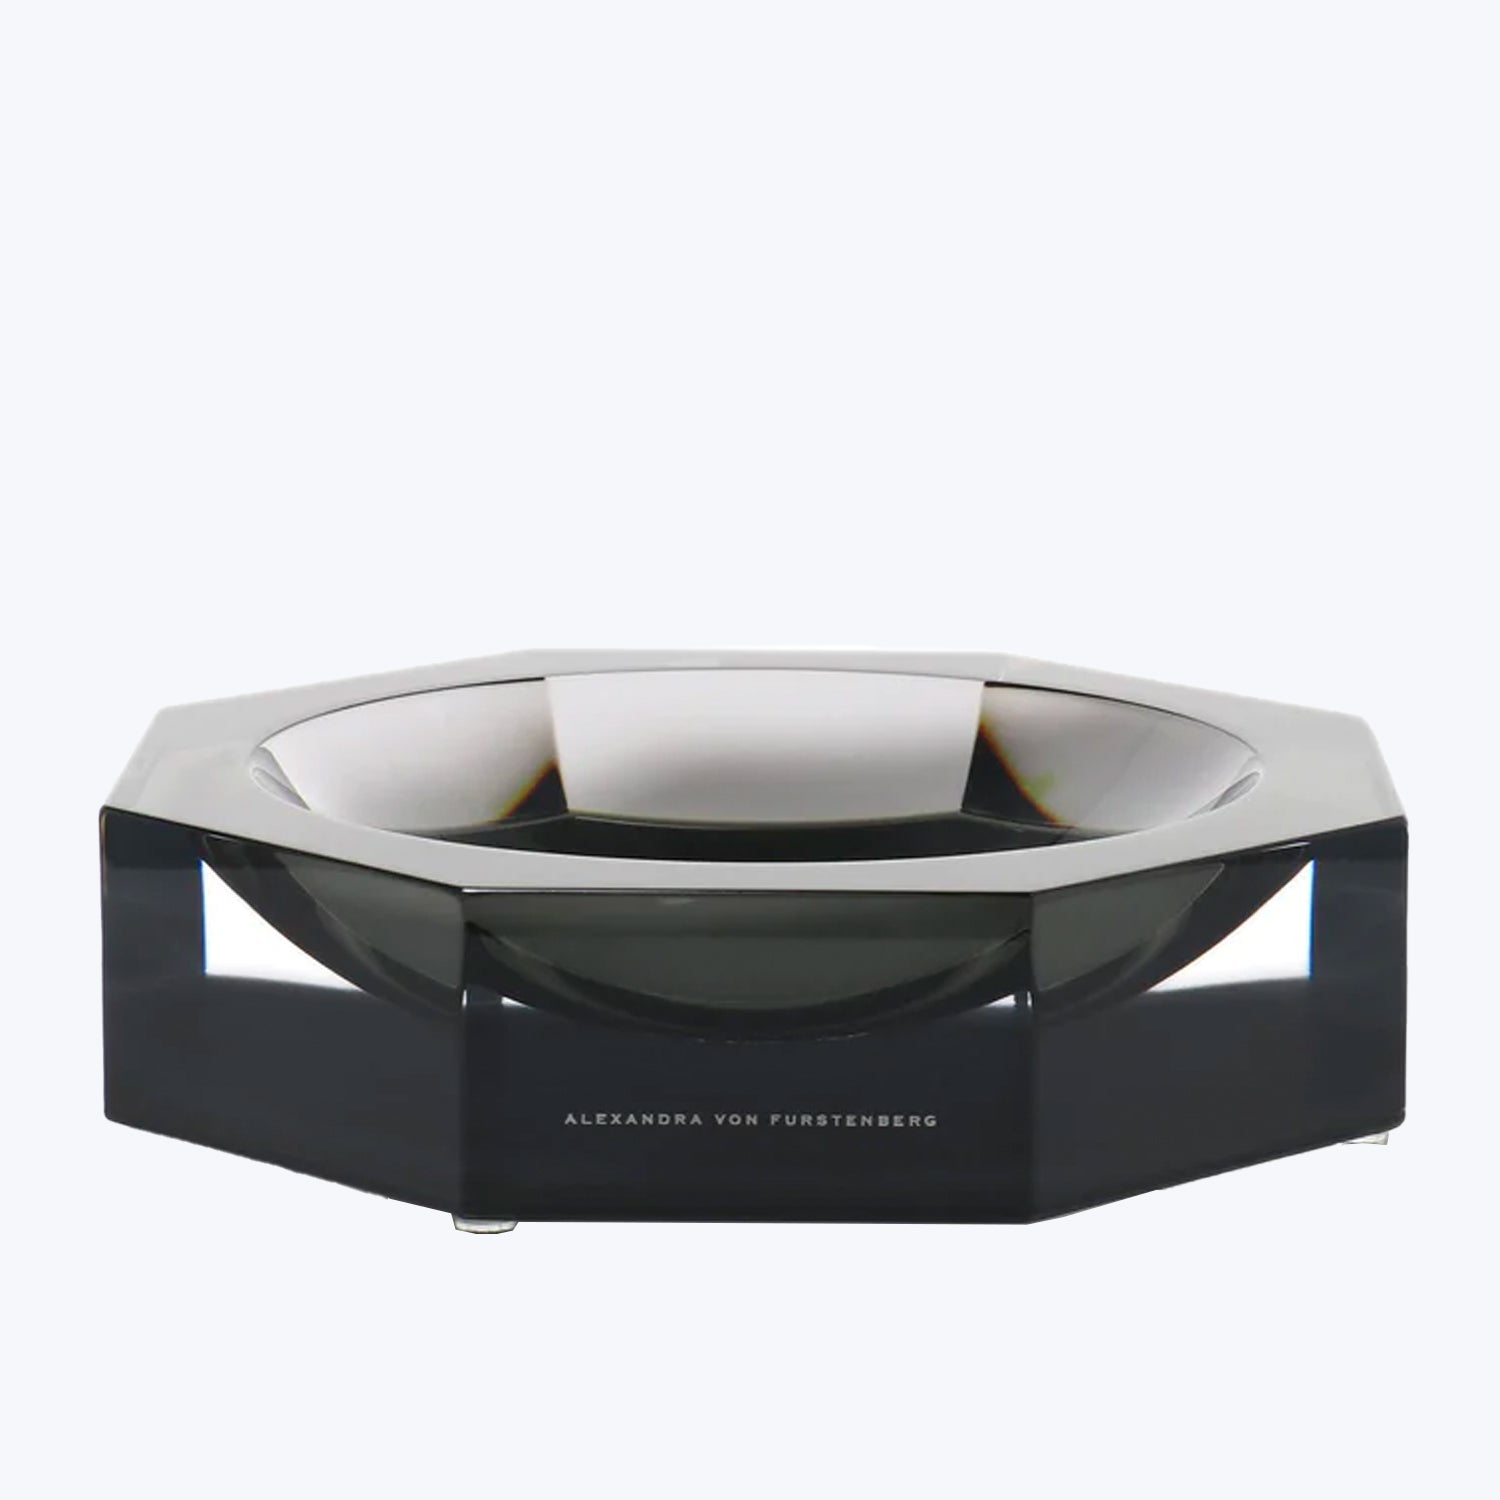 Stylish contemporary bowl/ashtray by Alexandra Von Furstenberg in glossy black.